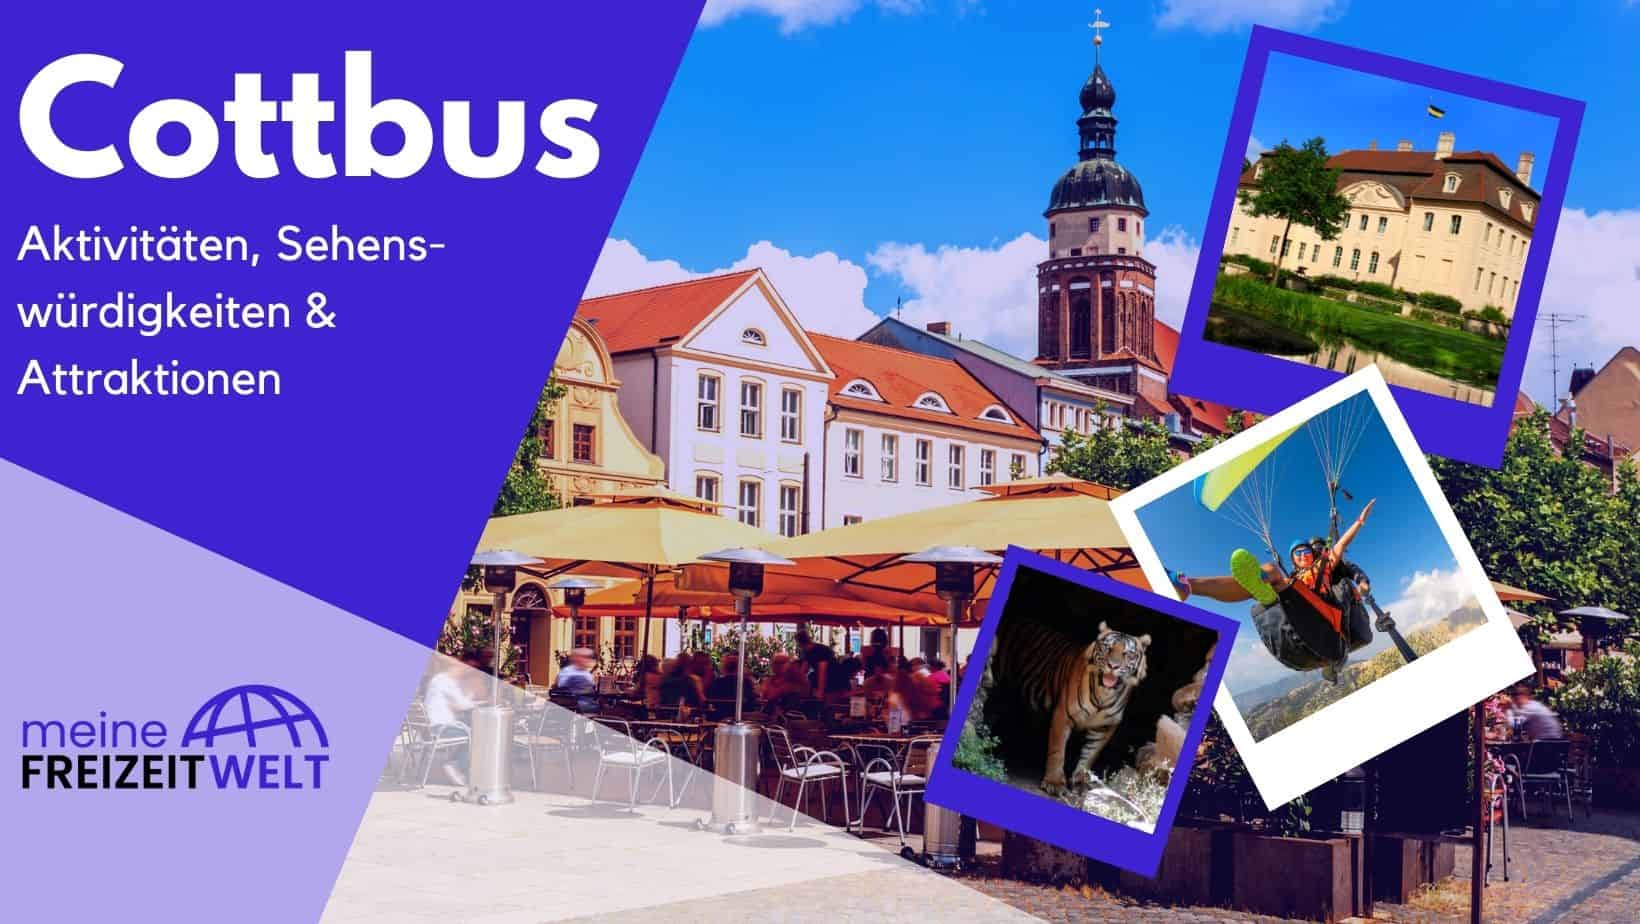 Cottbus Aktivitäten, Sehenswürdigkeiten & Attraktionen